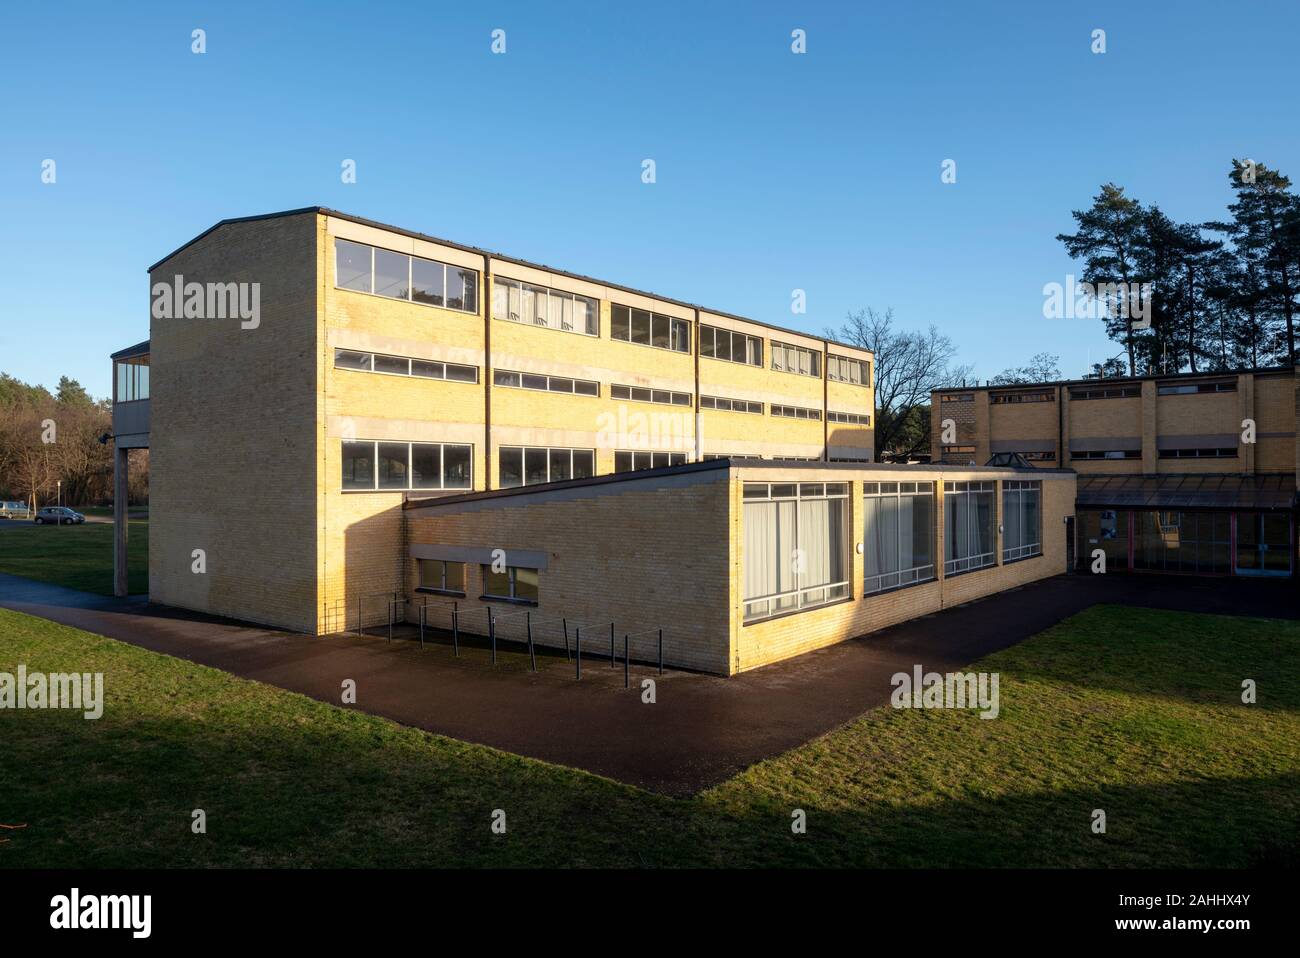 Bernau, Bundesschule Allgemeine des Deutschen Gewerkschaftsbundes, 1928-1930 von Hannes Meyer und Hans Wittwer erbaut. Palazzetto, darüber drei Klass Foto Stock